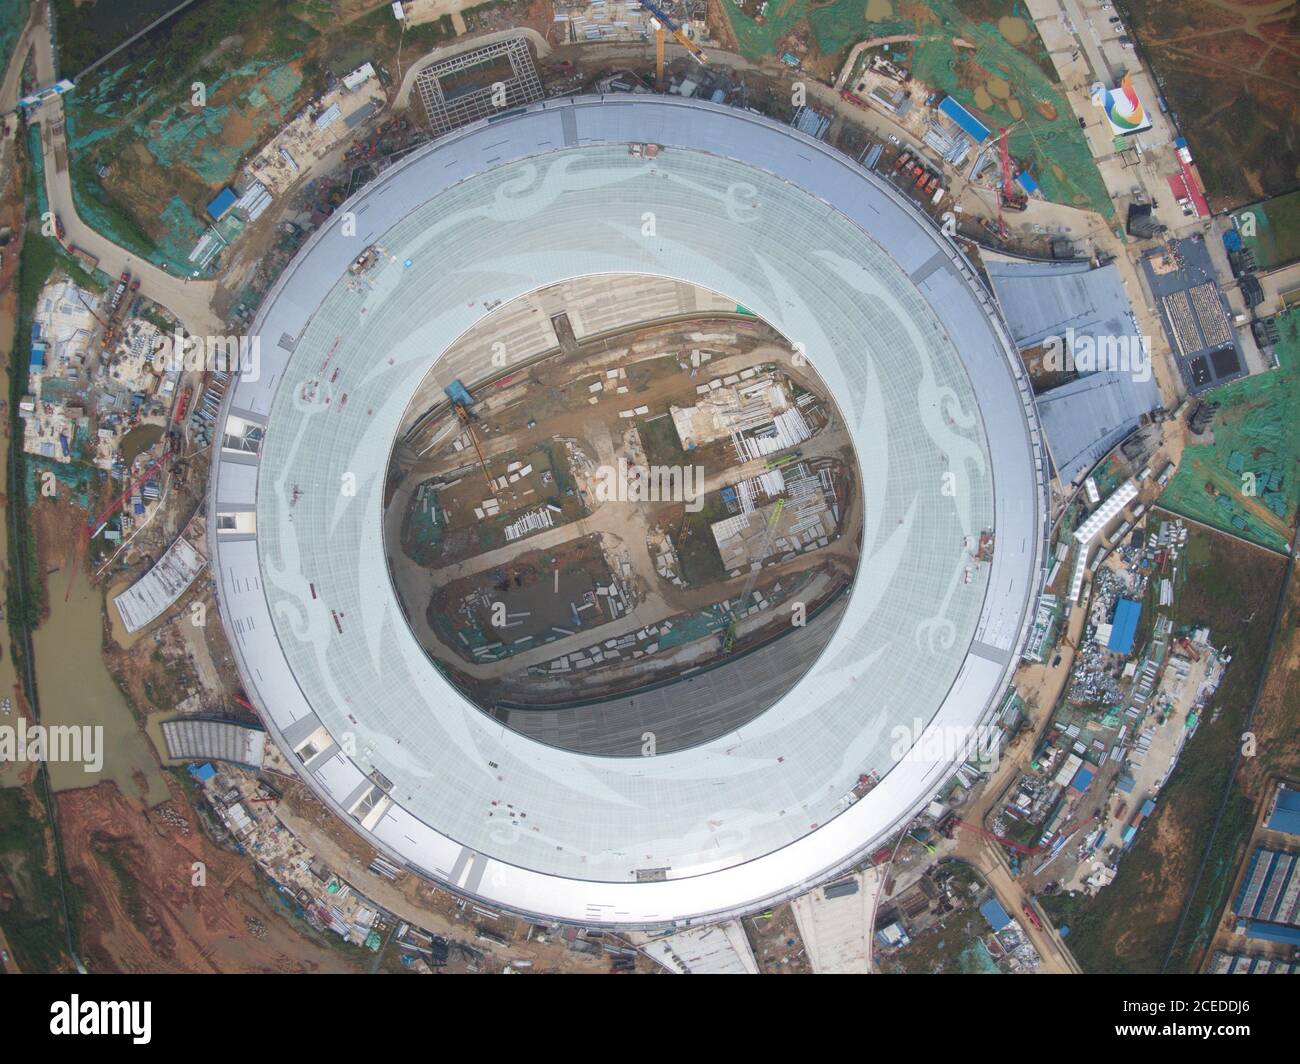 Une vue aérienne du stade de 40,000 capacités, qui sera le stade principal de l'Universiade d'été 2021, en cours de construction, ville de Chengdu, province du Sichuan, au sud-ouest de la Chine, 21 août 2020. Banque D'Images